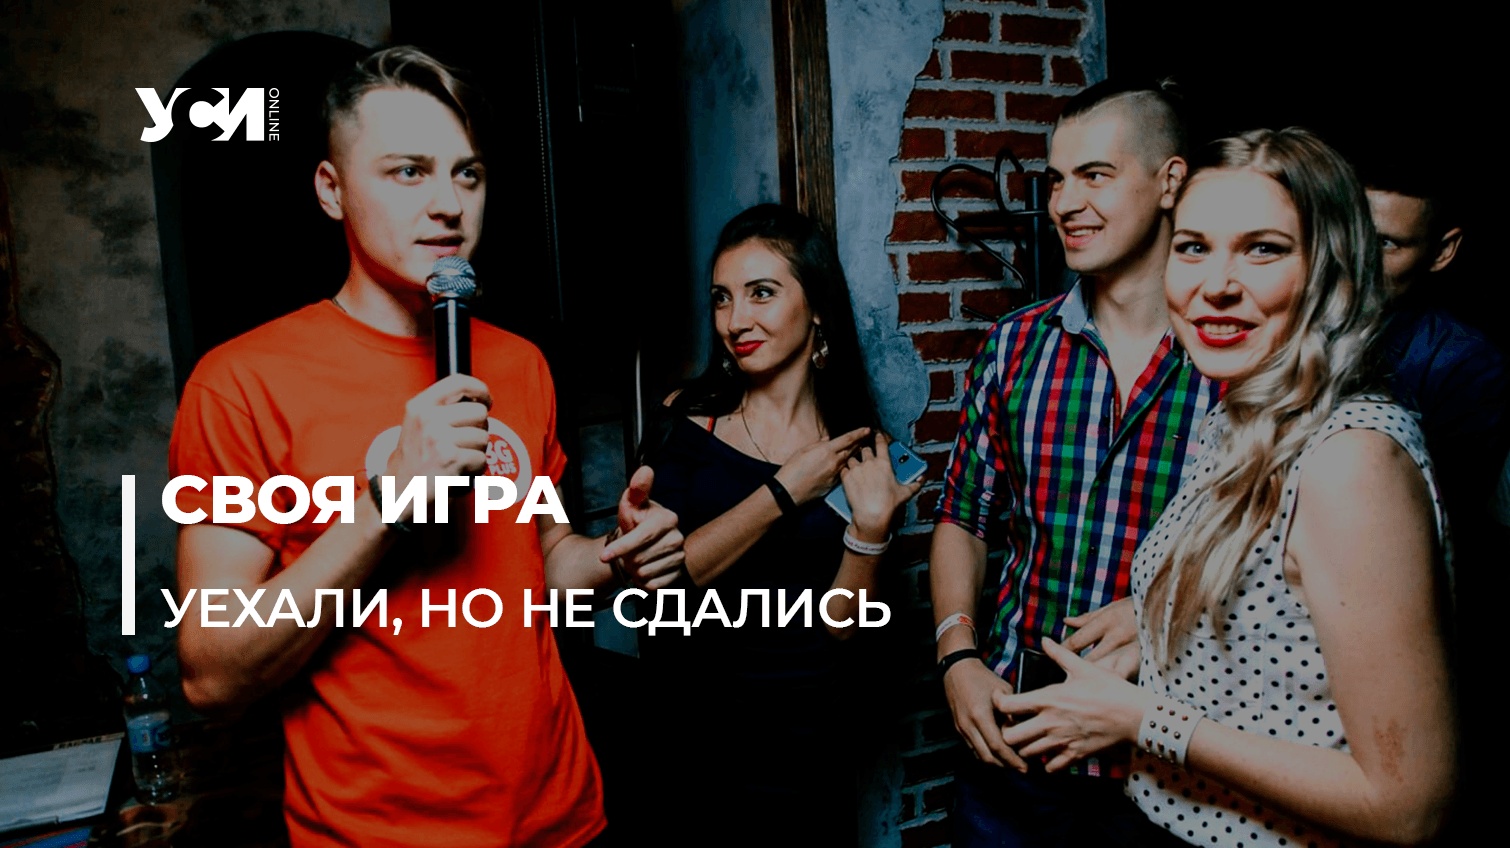 Краматорский квиз в Одессе: как из-за войны переезжает бизнес «фото»